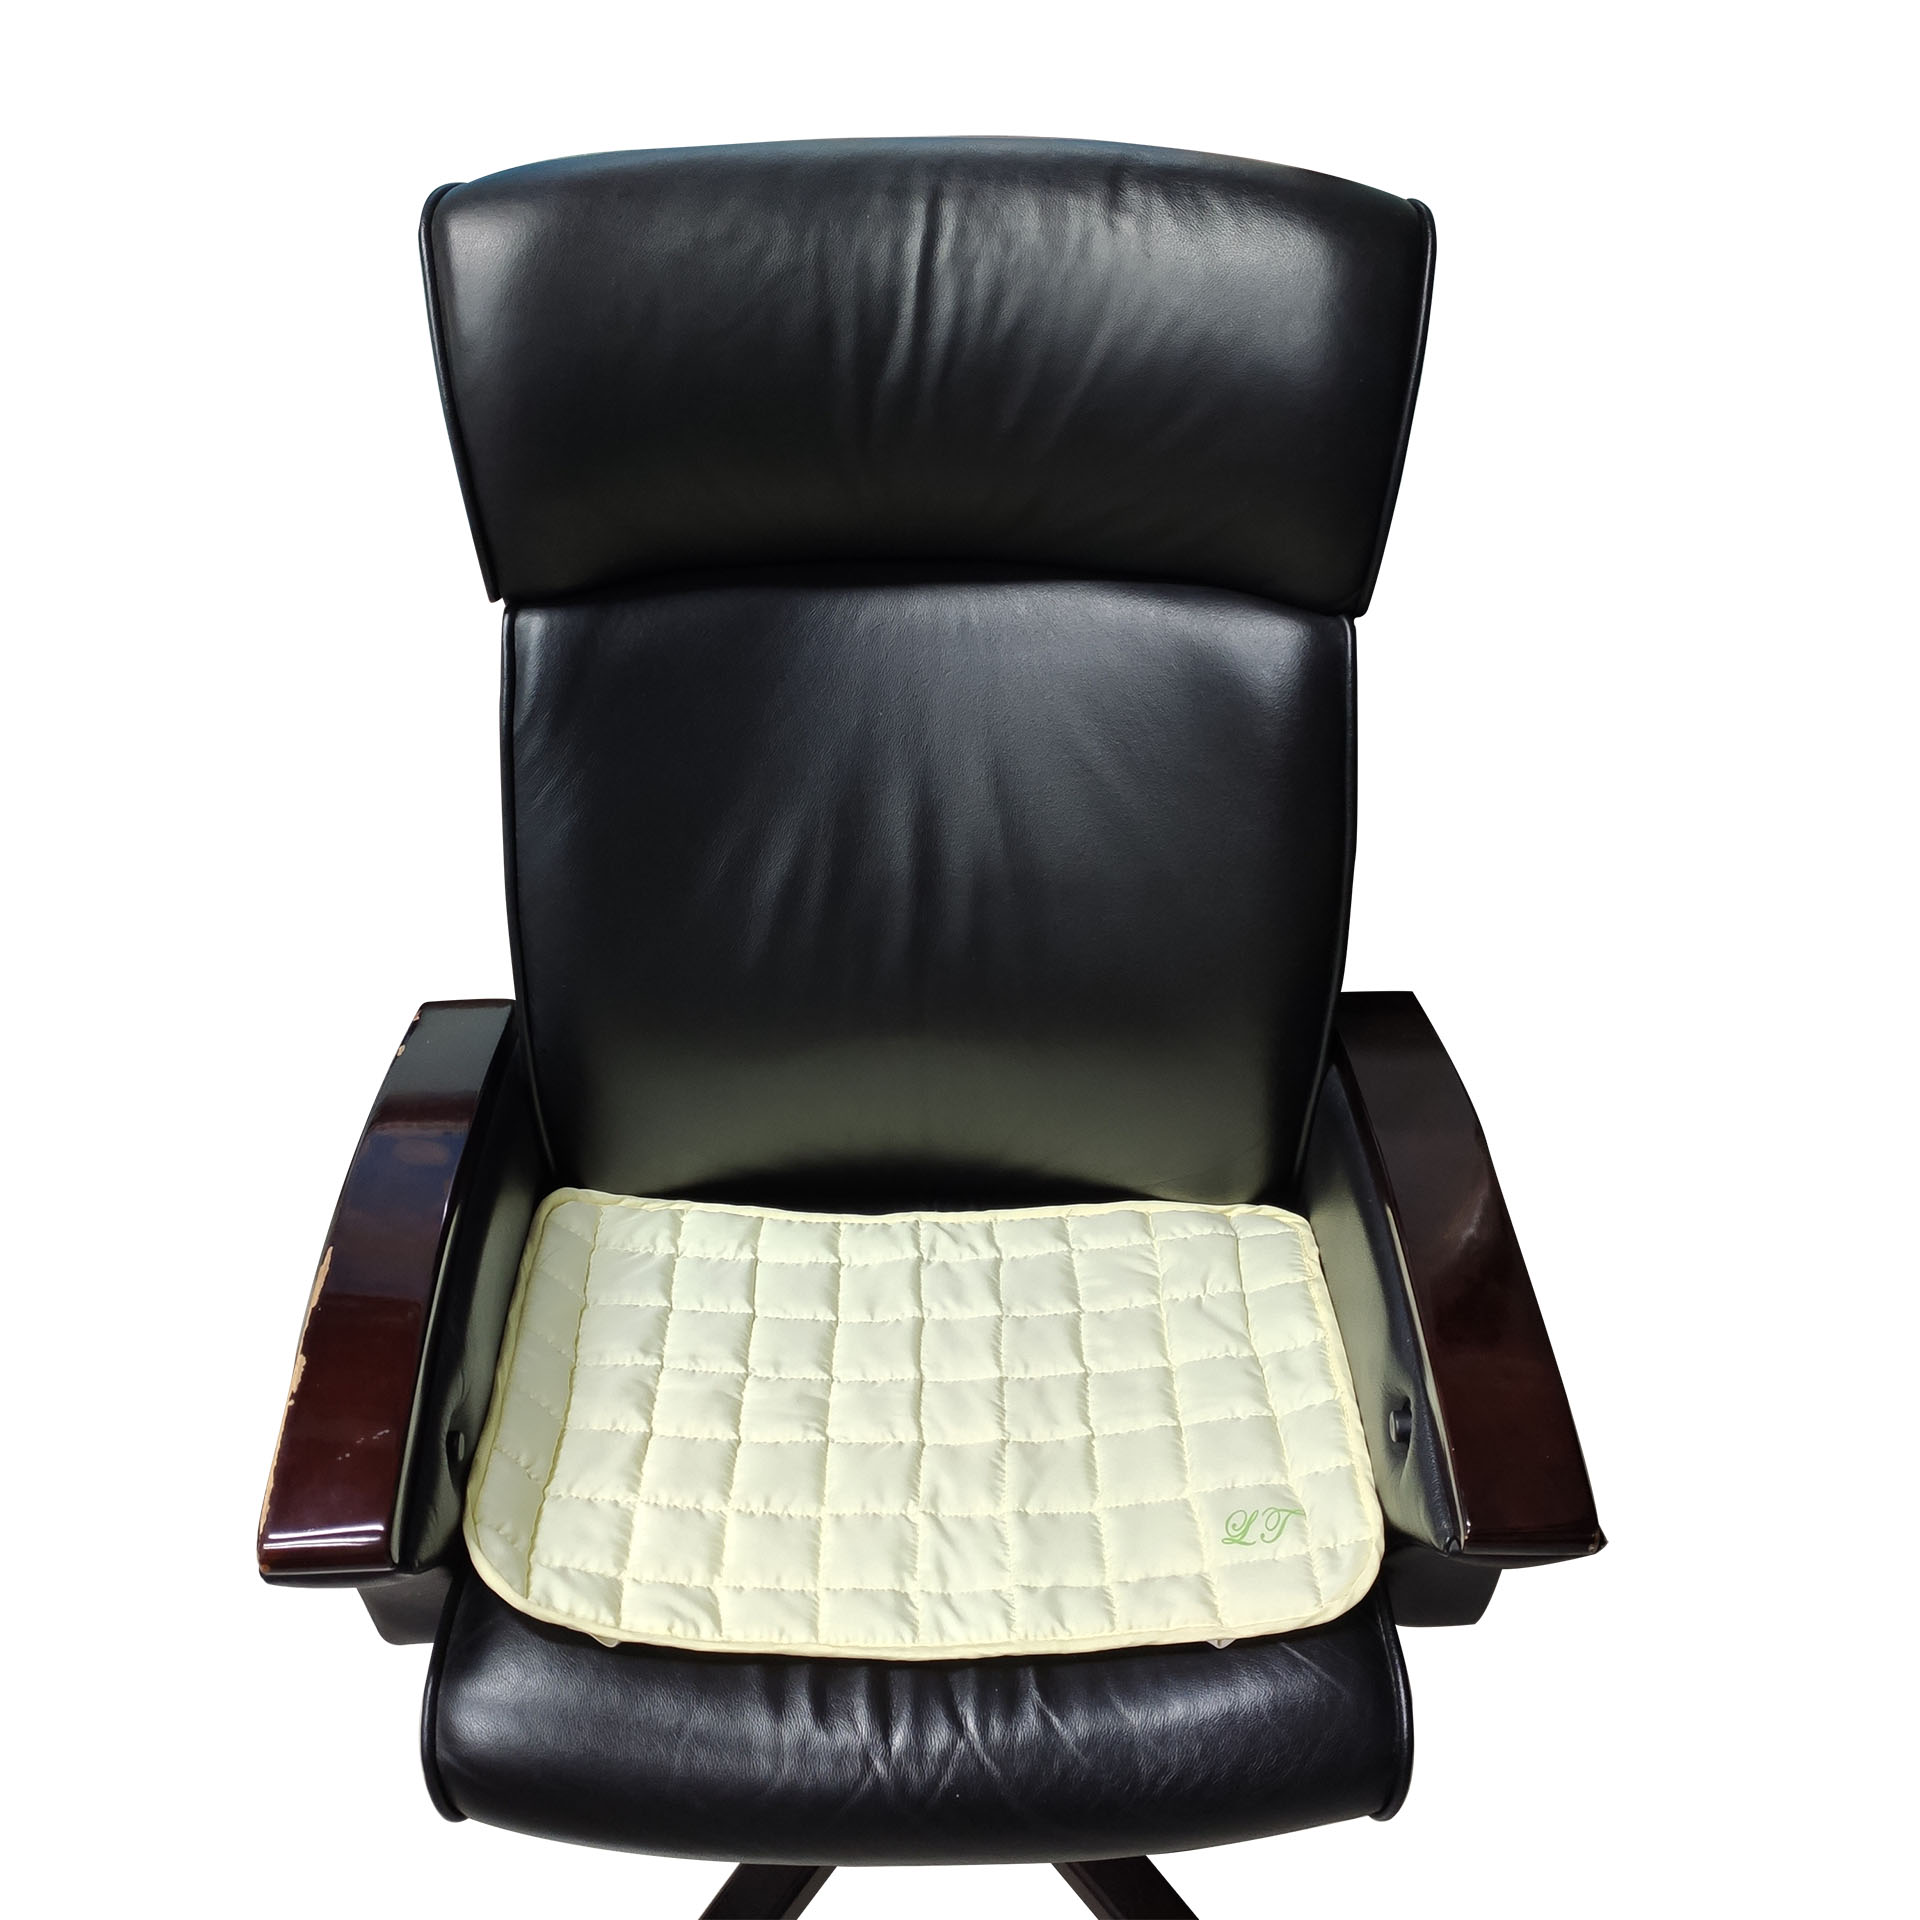 磁性枕墊當椅墊使用時